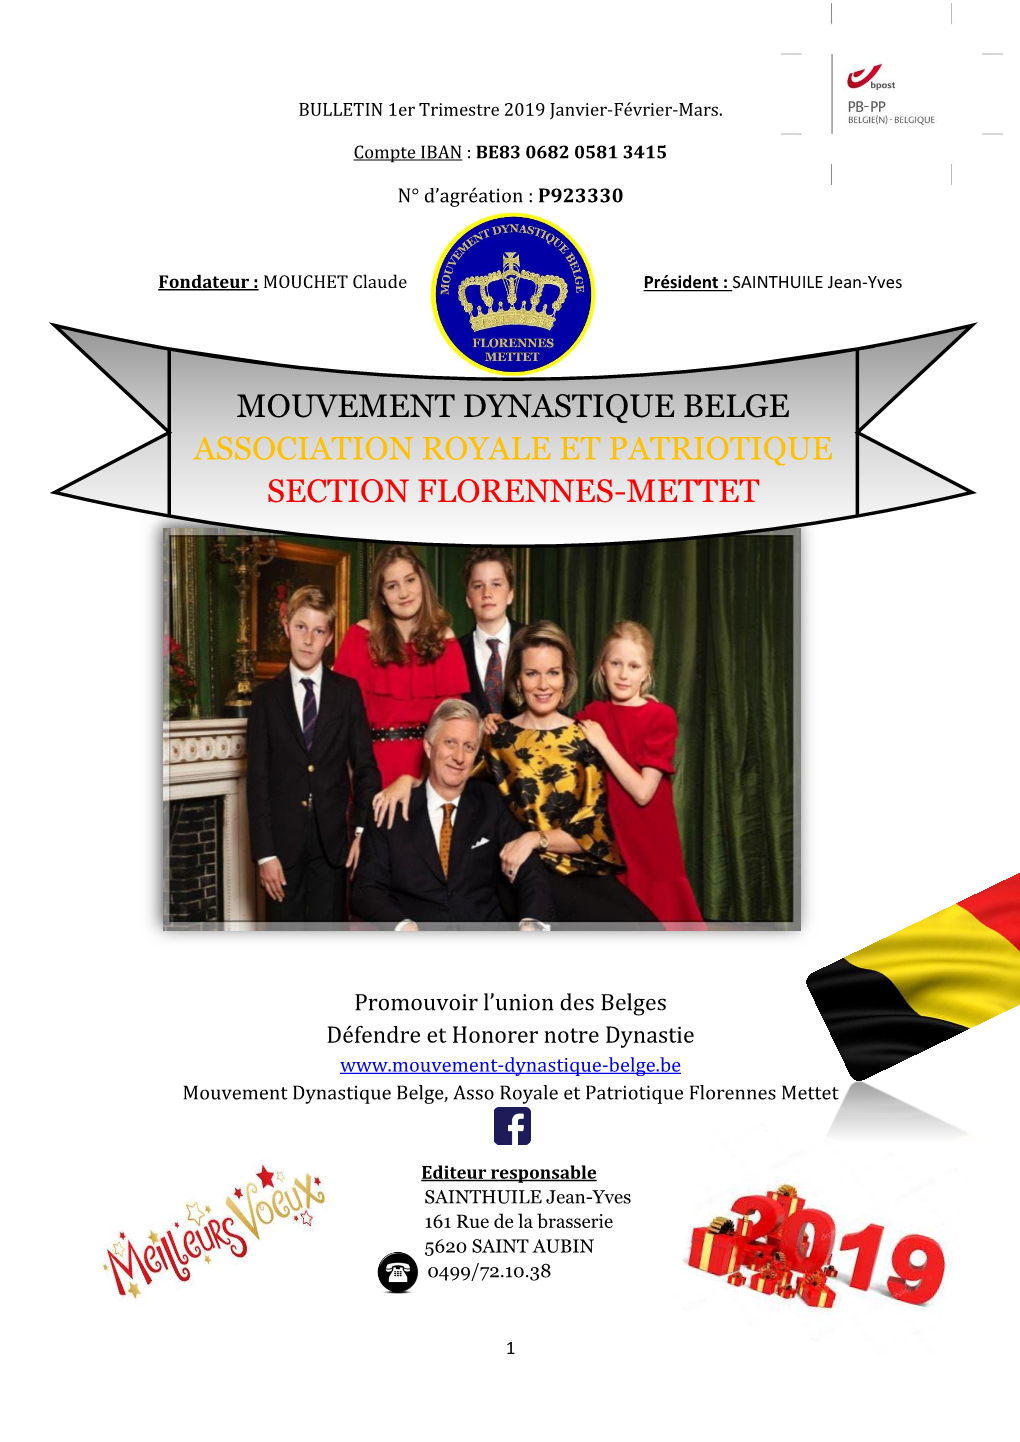 Mouvement Dynastique Belge Association Royale Et Patriotique Section Florennes-Mettet